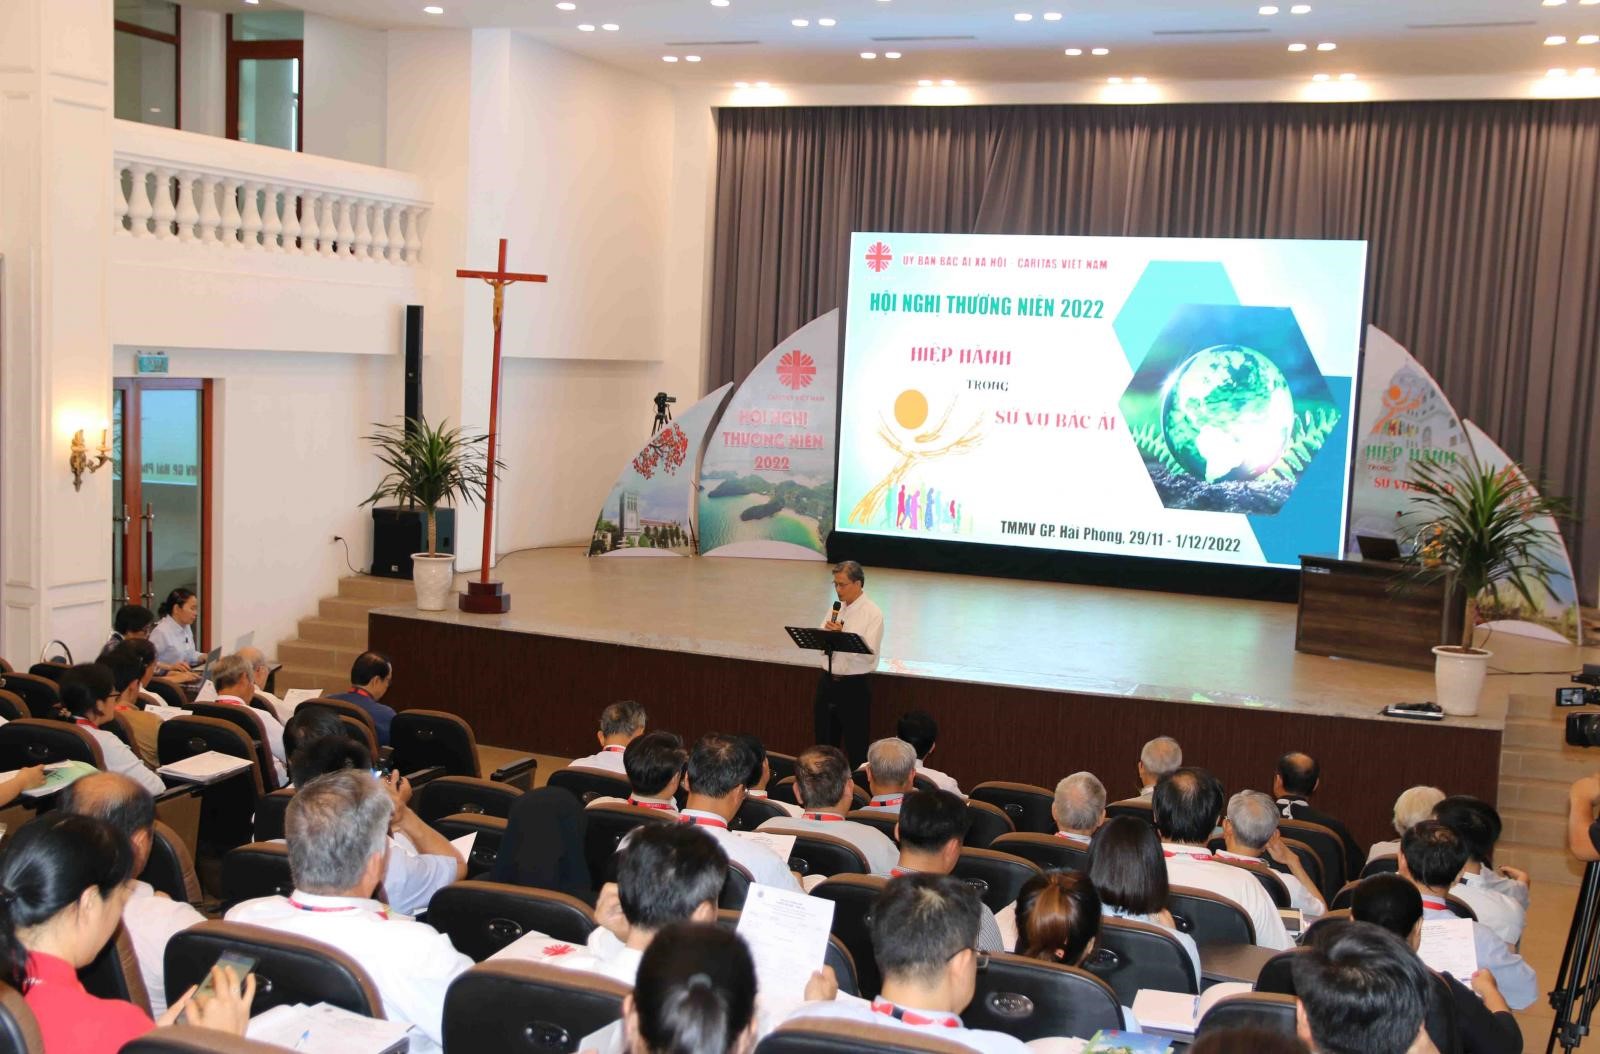 Caritas Việt Nam - Hội nghị thường niên năm 2022